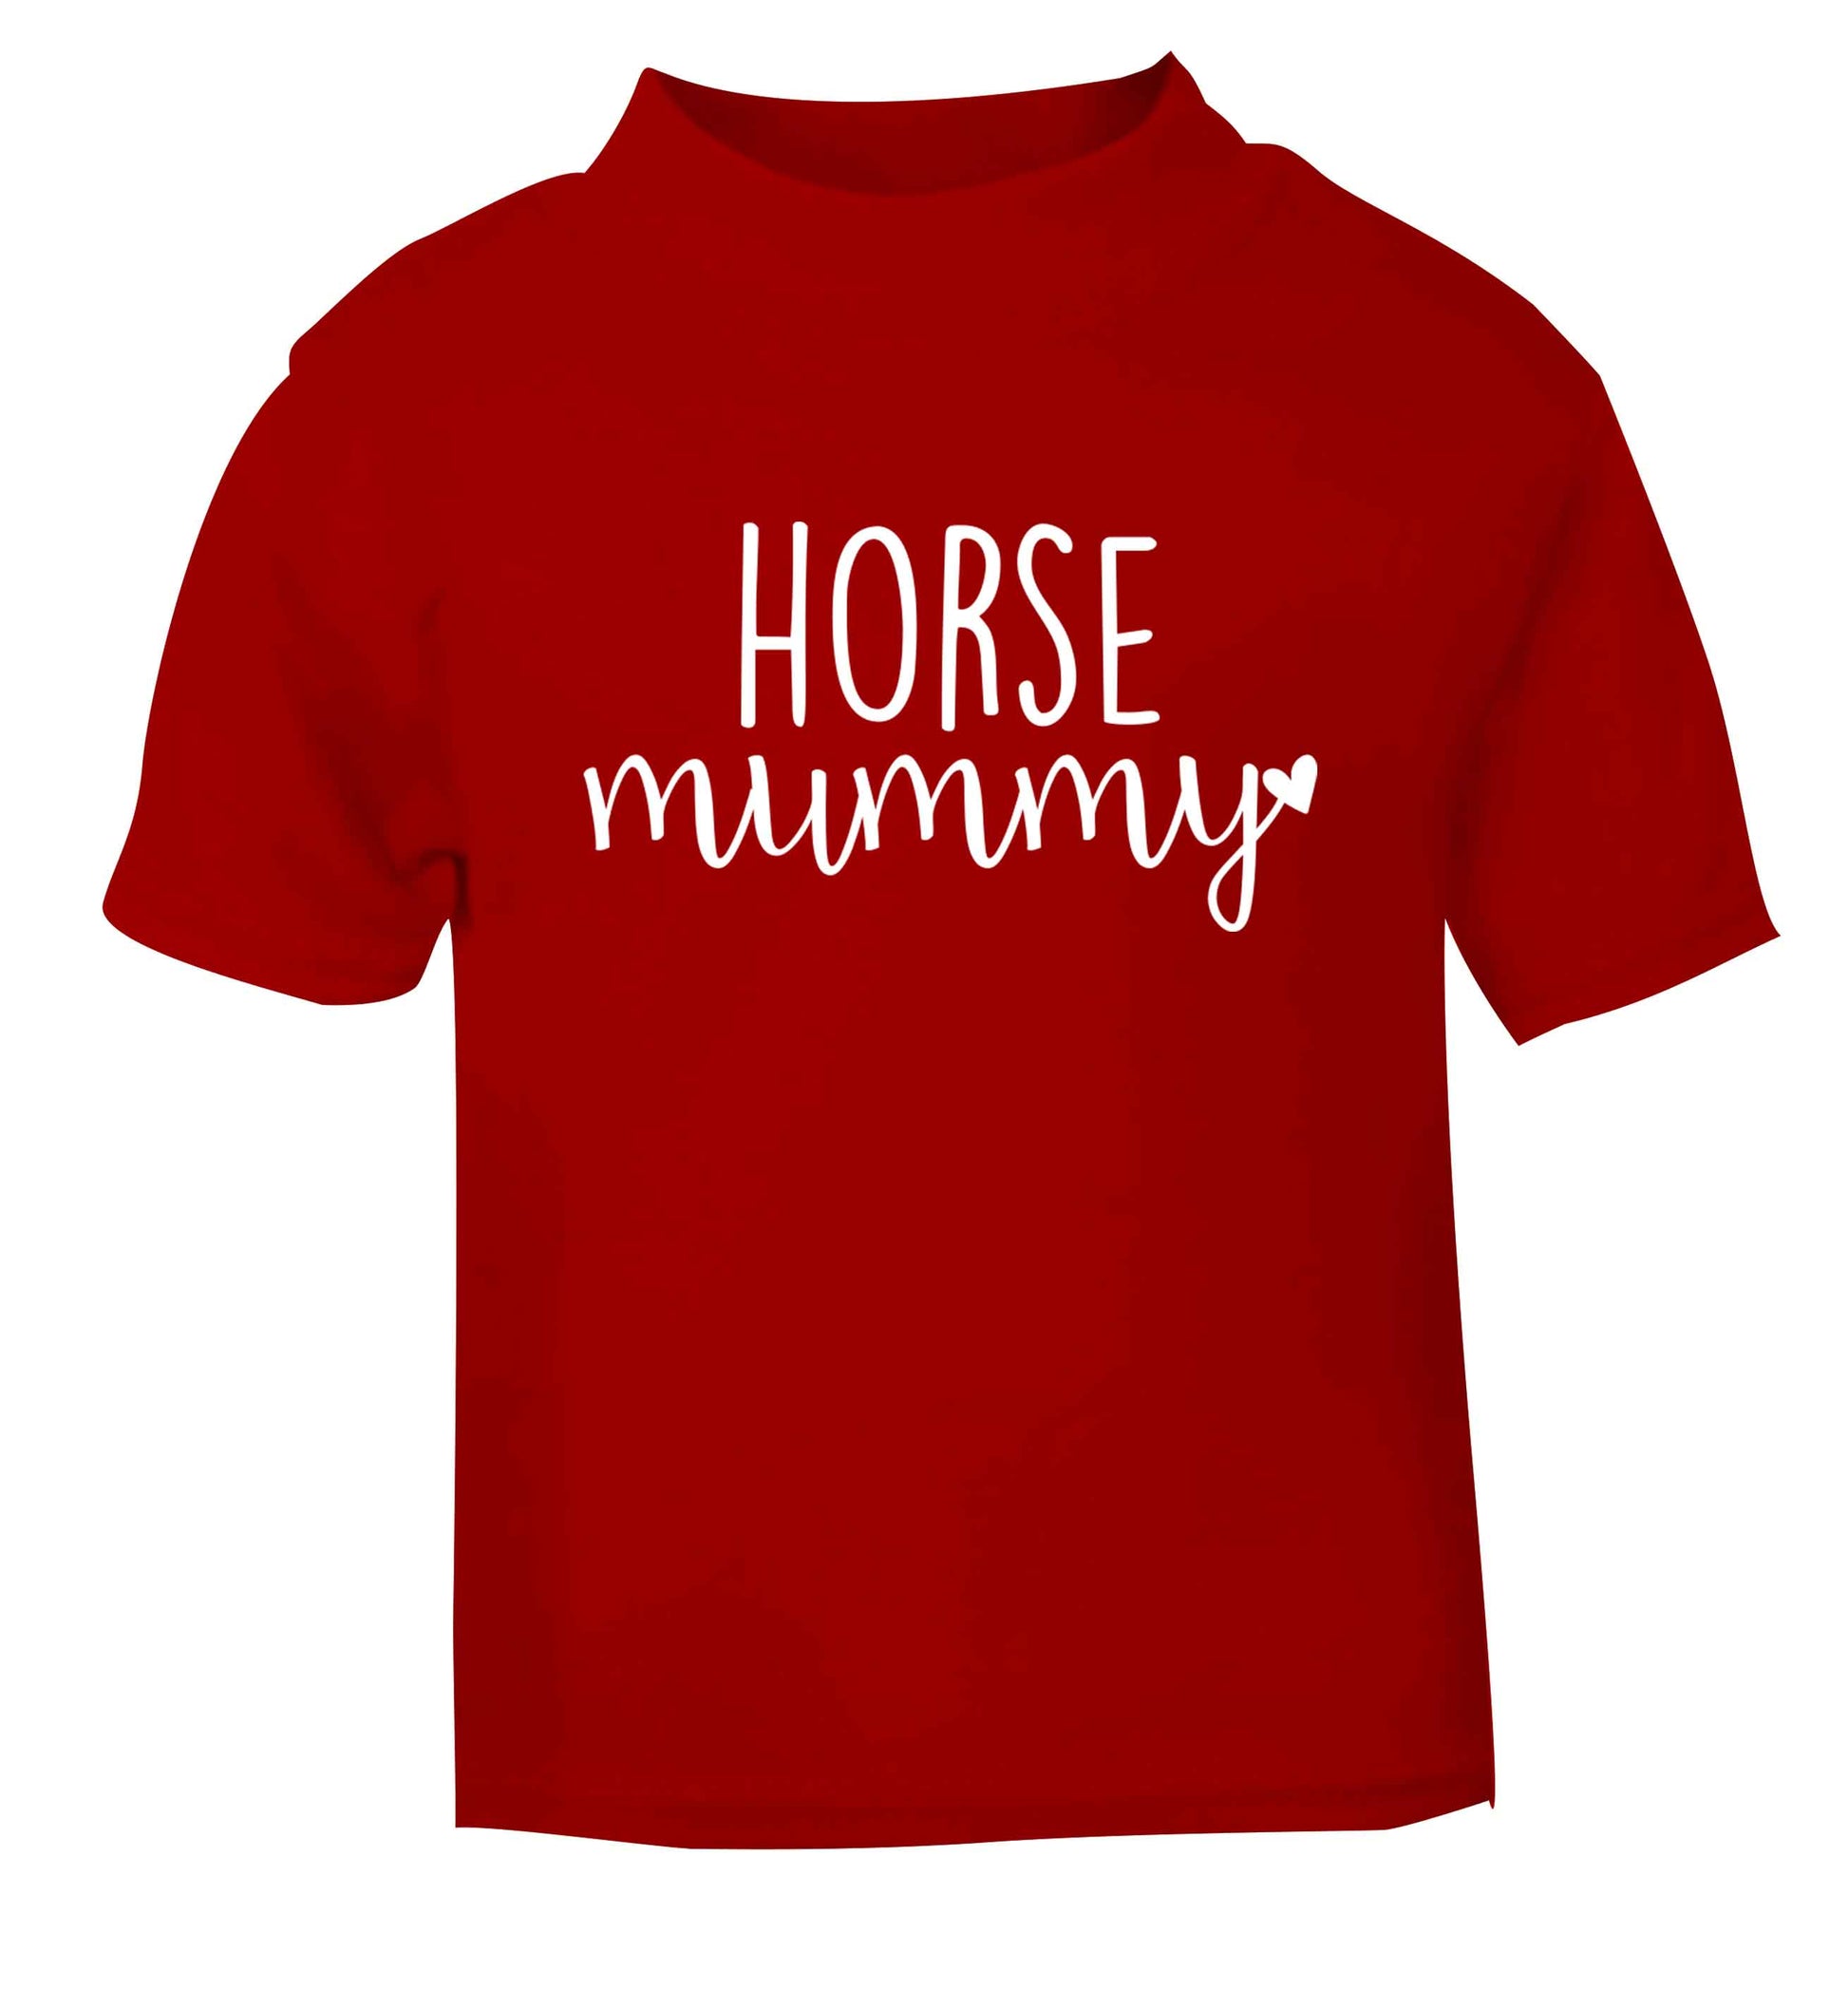 Horse mummy red baby toddler Tshirt 2 Years